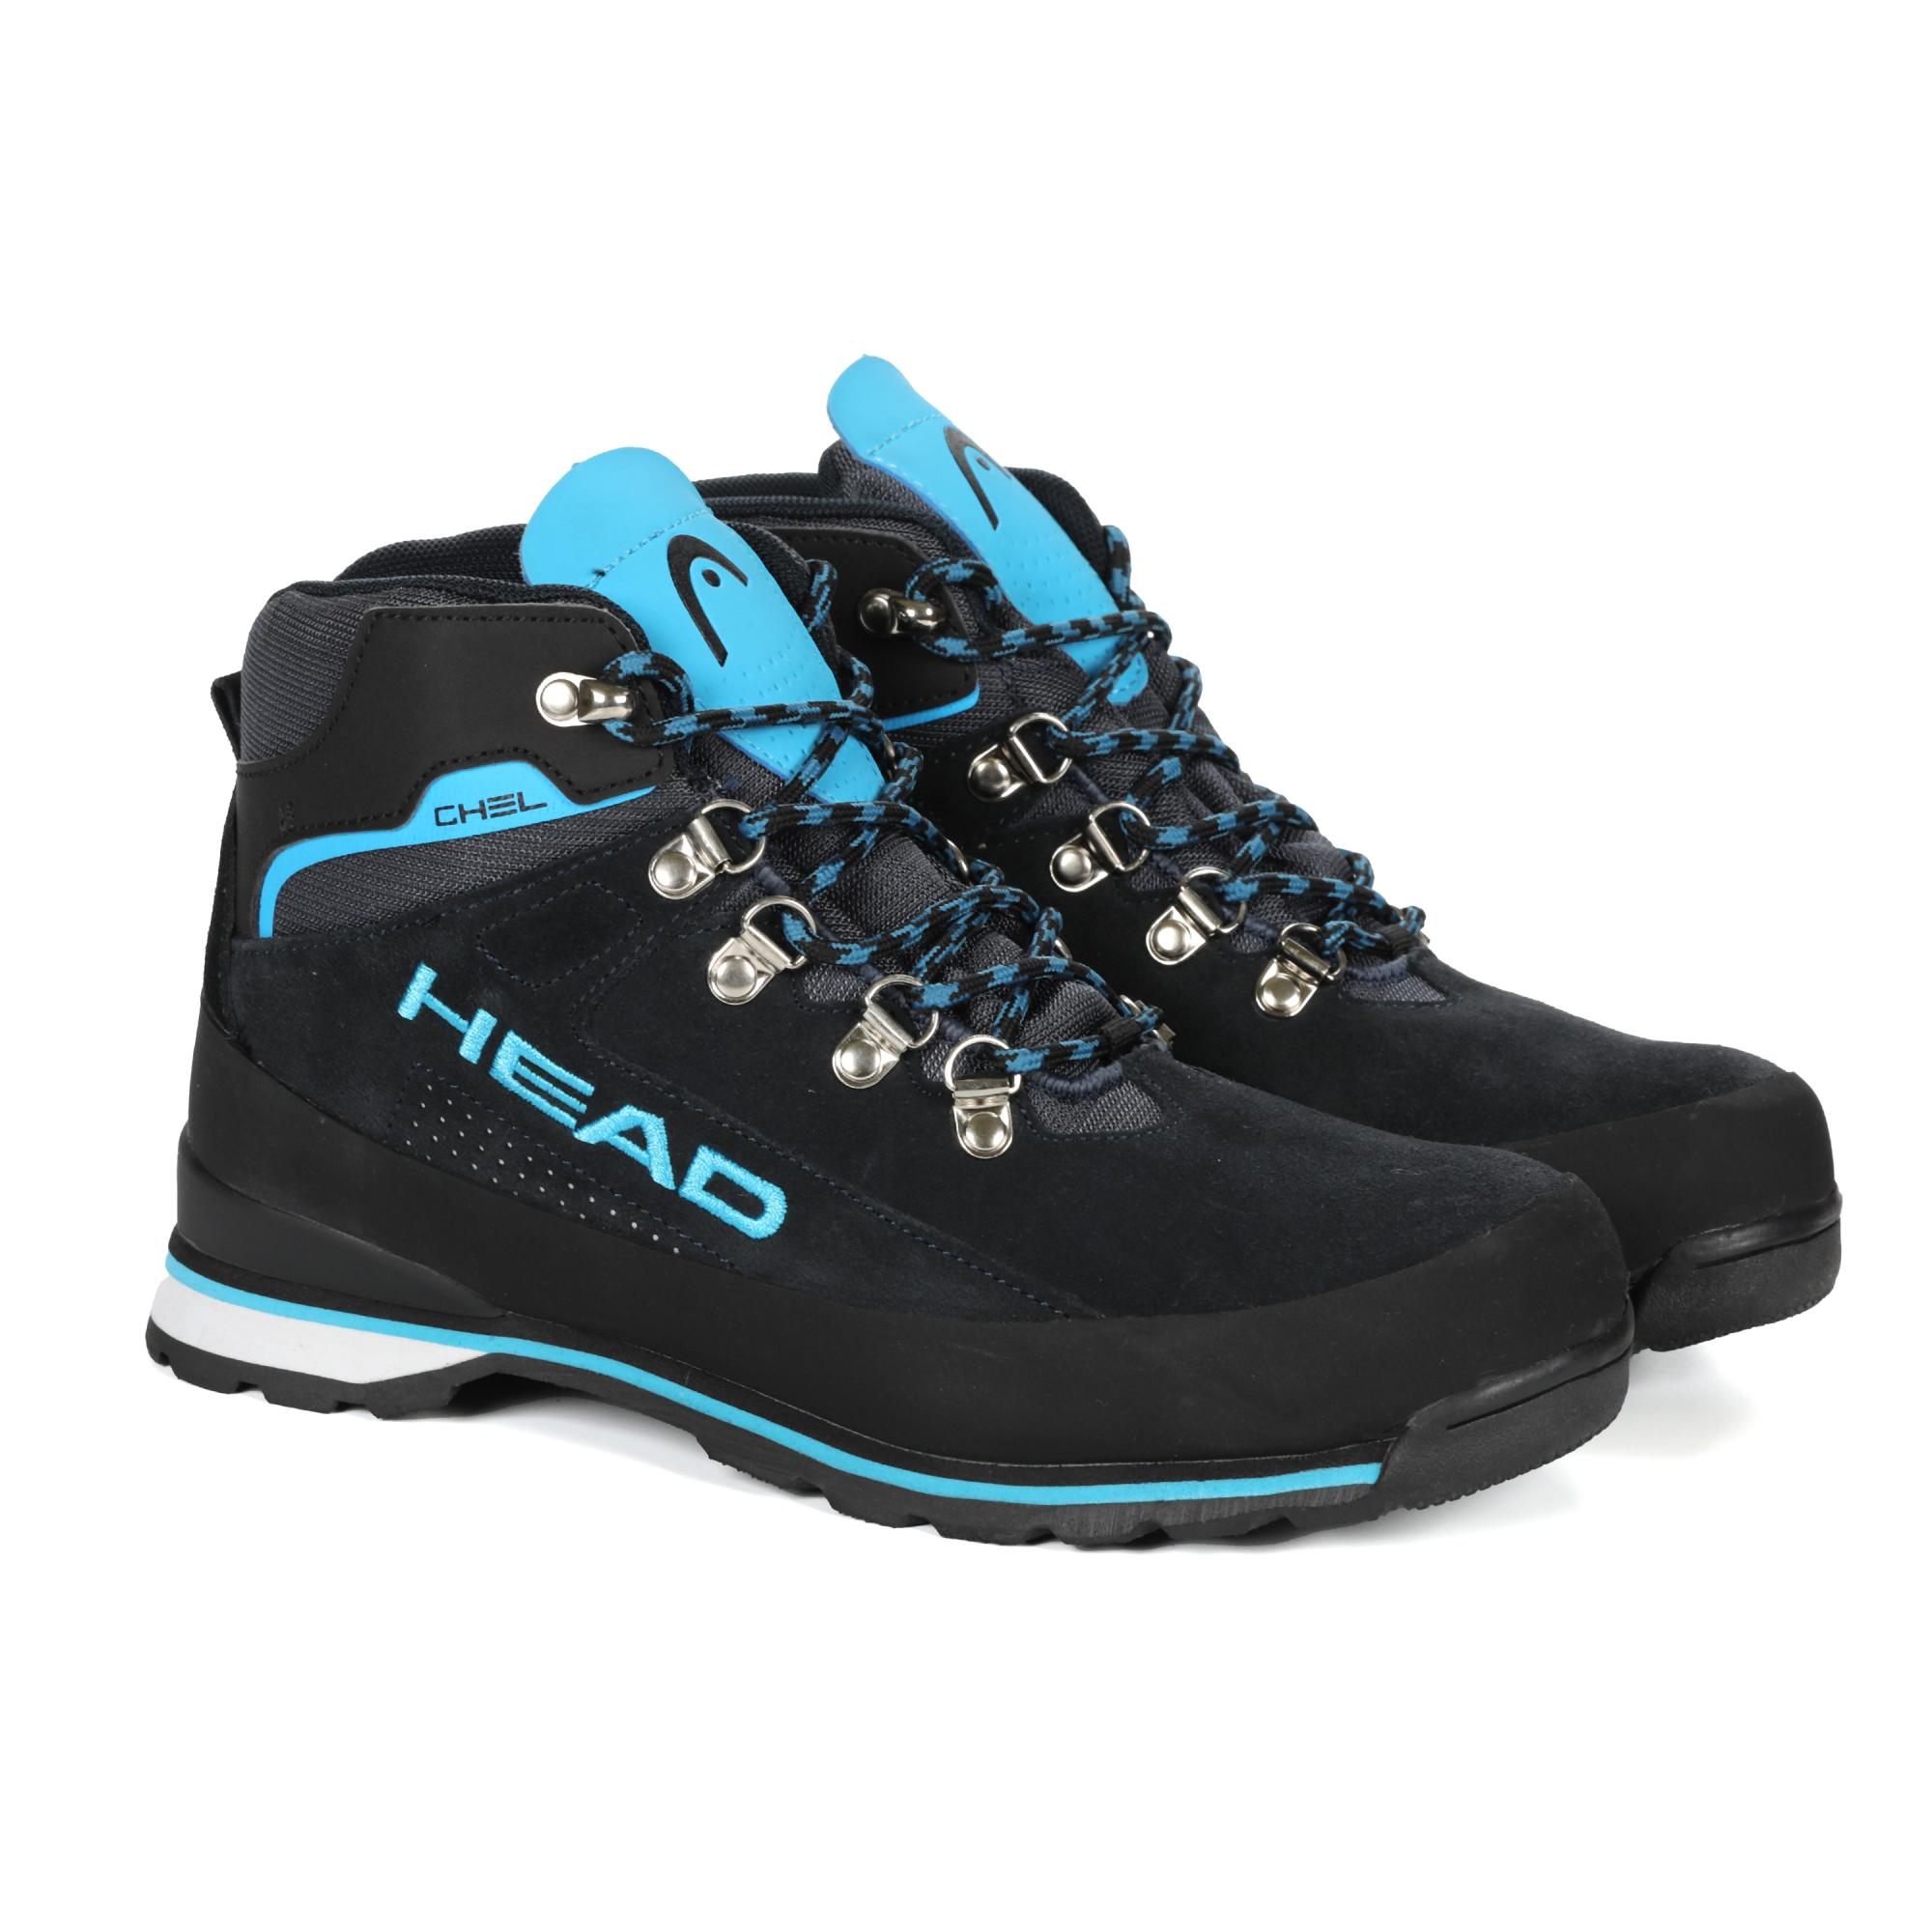 Женские ботинки HEAD (GHEL NBX HDW311200), синие